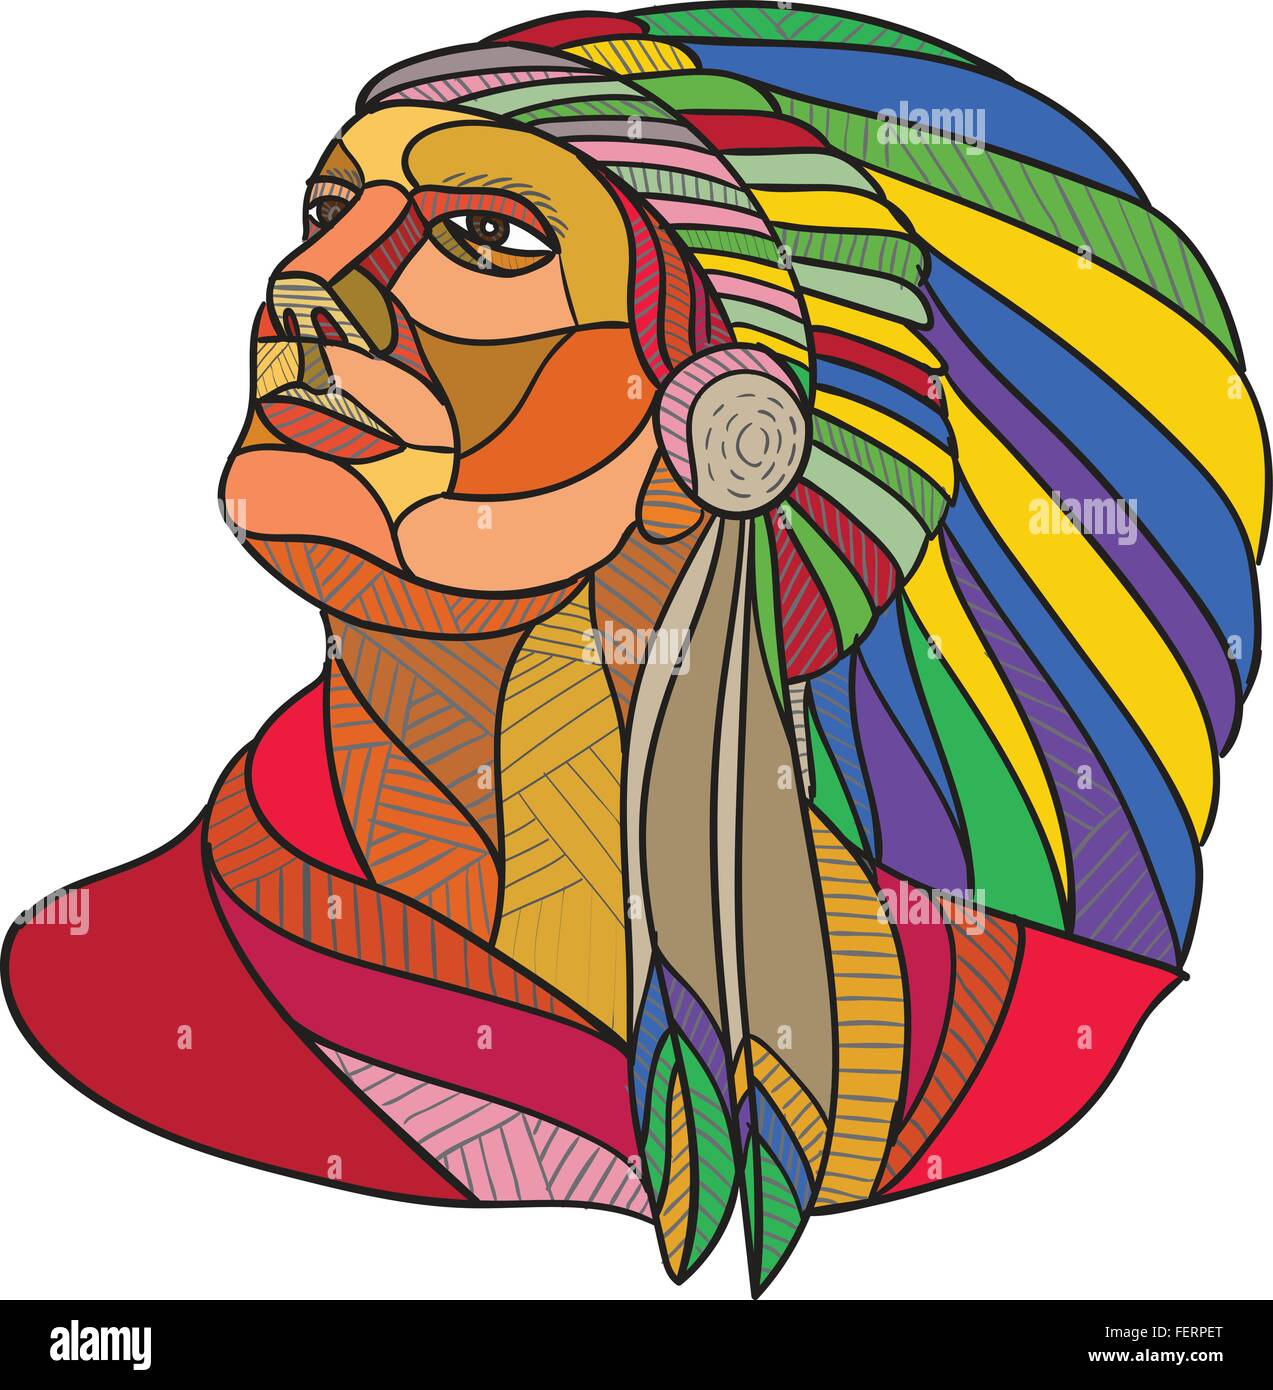 Croquis dessin illustration de style indien de l'Amérique du chef guerrier avec la coiffure à la recherche sur le côté isolé sur fond blanc. Illustration de Vecteur